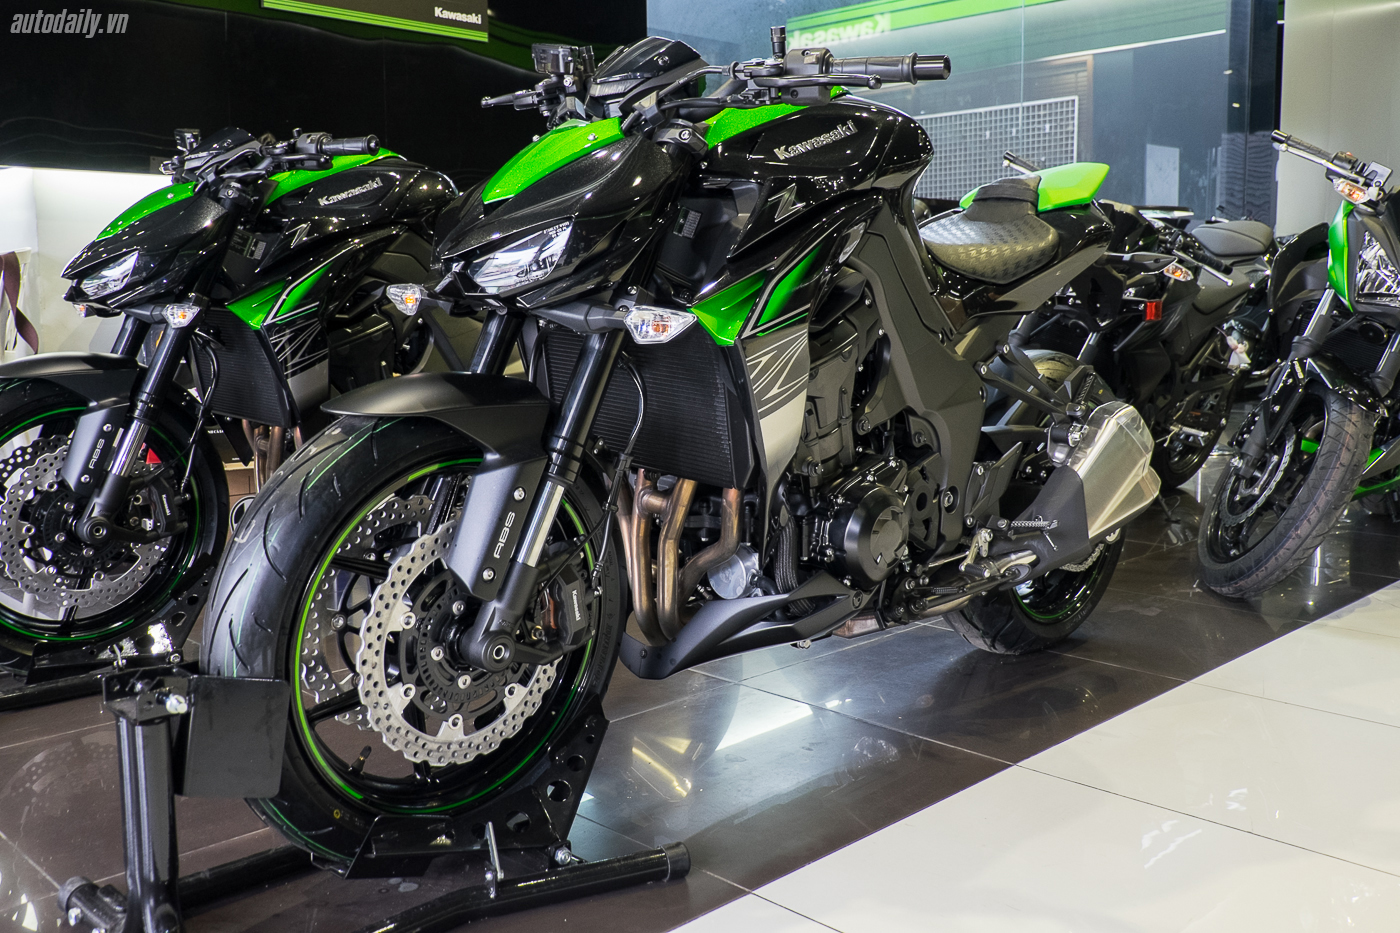 Xem thêm ảnh mẫu naked-bike Kawasaki Z1000 2017